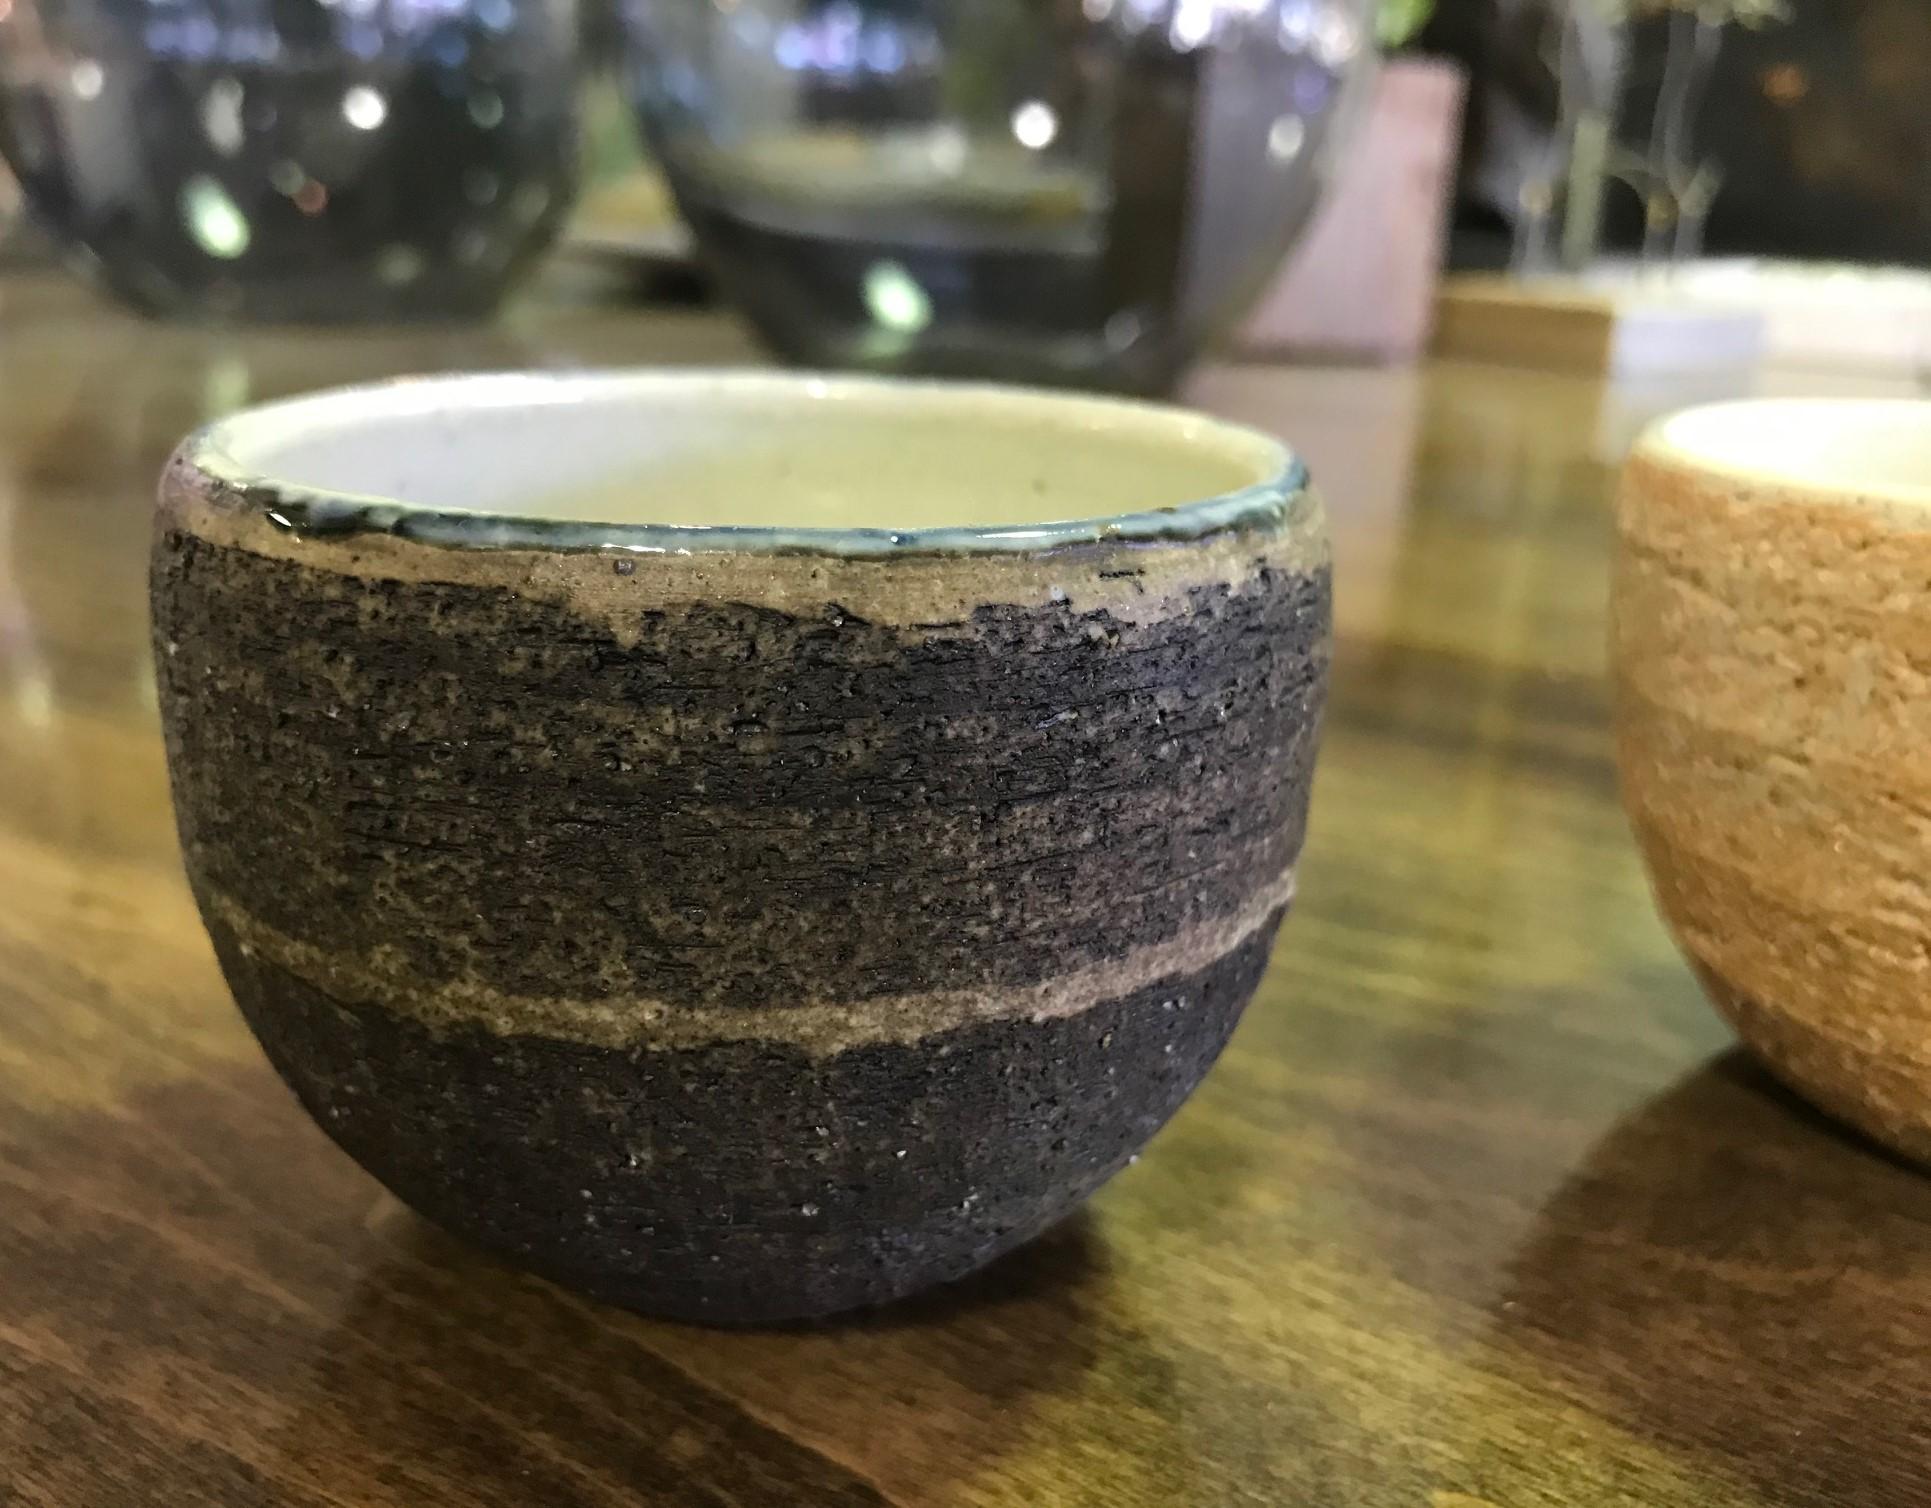 Wunderschön gearbeitete und gestaltete japanische Teetasse. Tolle Textur und Farbe.

Wahrscheinlich Showa-Zeit Mitte des Jahrhunderts, könnte aber auch älter sein.

Feine Handwerkskunst. Sehr attraktiv.

Bitte beachten Sie, dass der helle